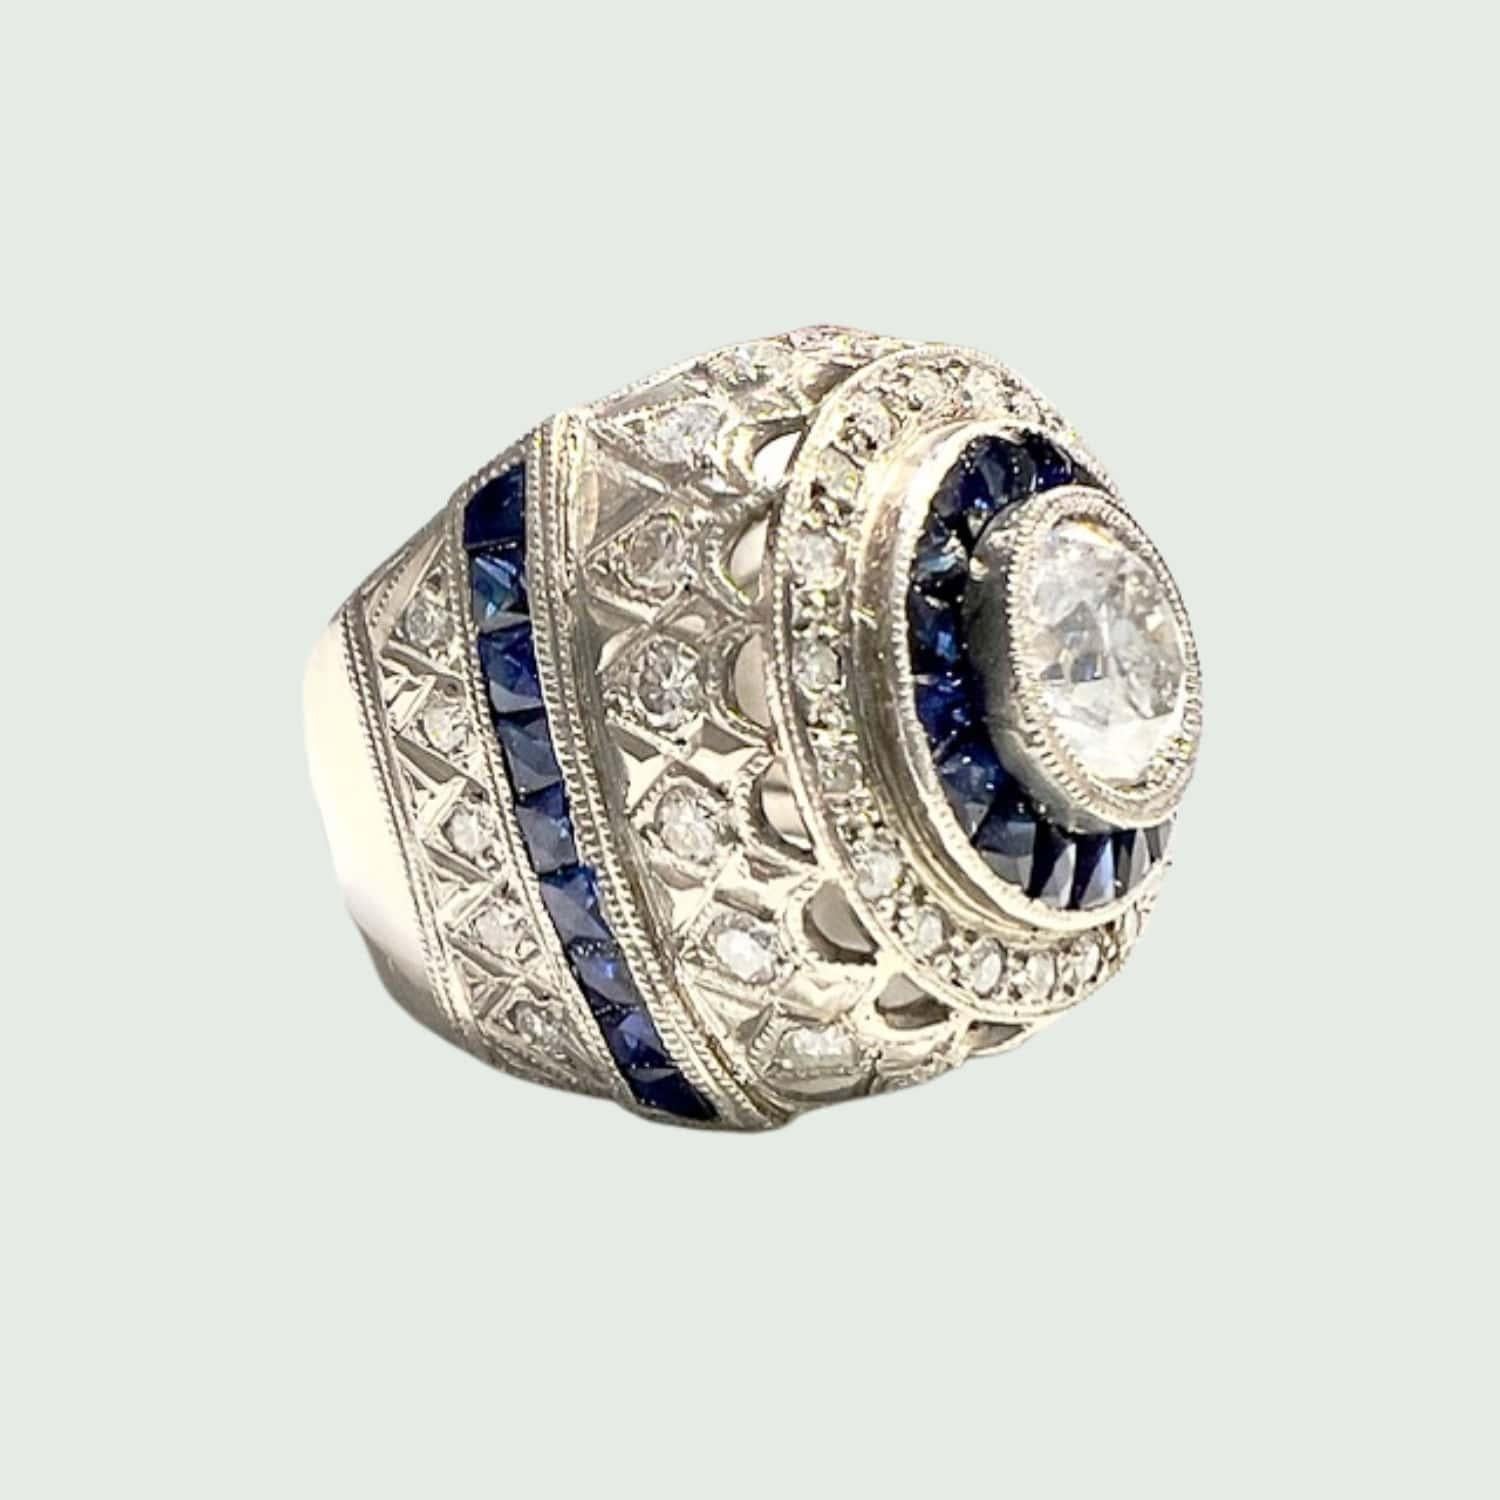 Lassen Sie sich von der zeitlosen Eleganz dieses von der Art déco inspirierten Platinrings mit Diamanten und Saphiren verzaubern. Mit einem Gewicht von 12,30 Gramm und einer Größe von 14,5/54,5 besticht dieser Ring durch seine Präsenz und verbindet